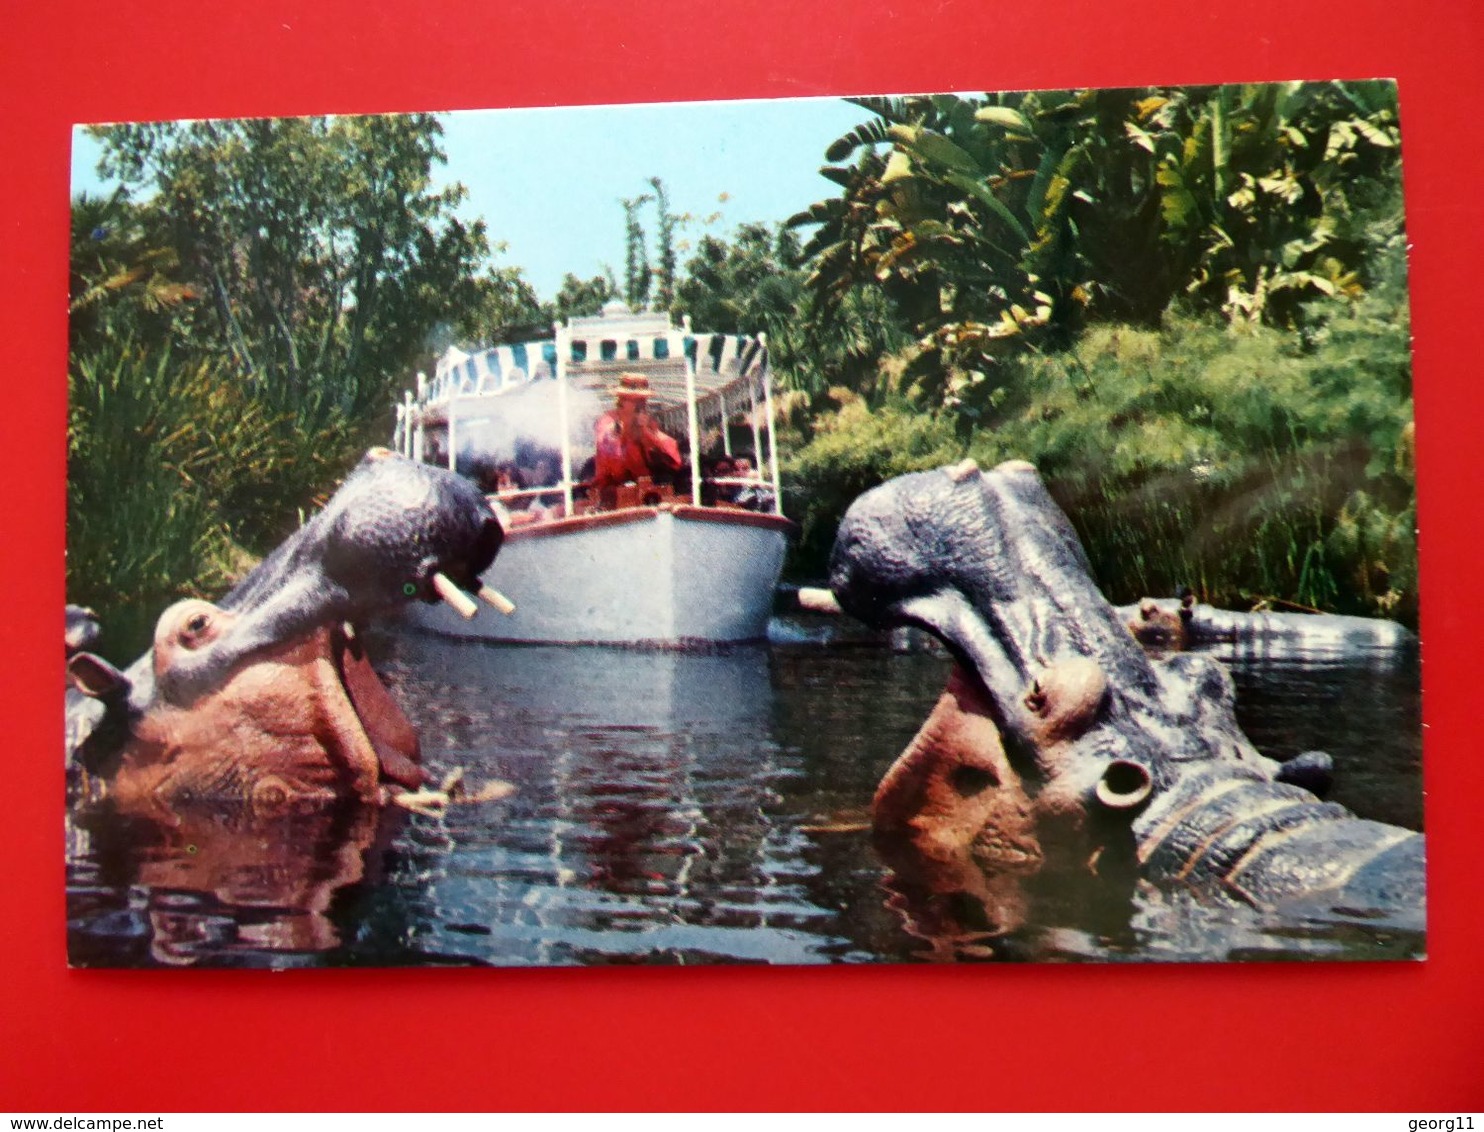 Disneyland - Jungle Cruise - Dschungelkreuzfahrt - Vintage Postcard - Kleinformat - Anaheim